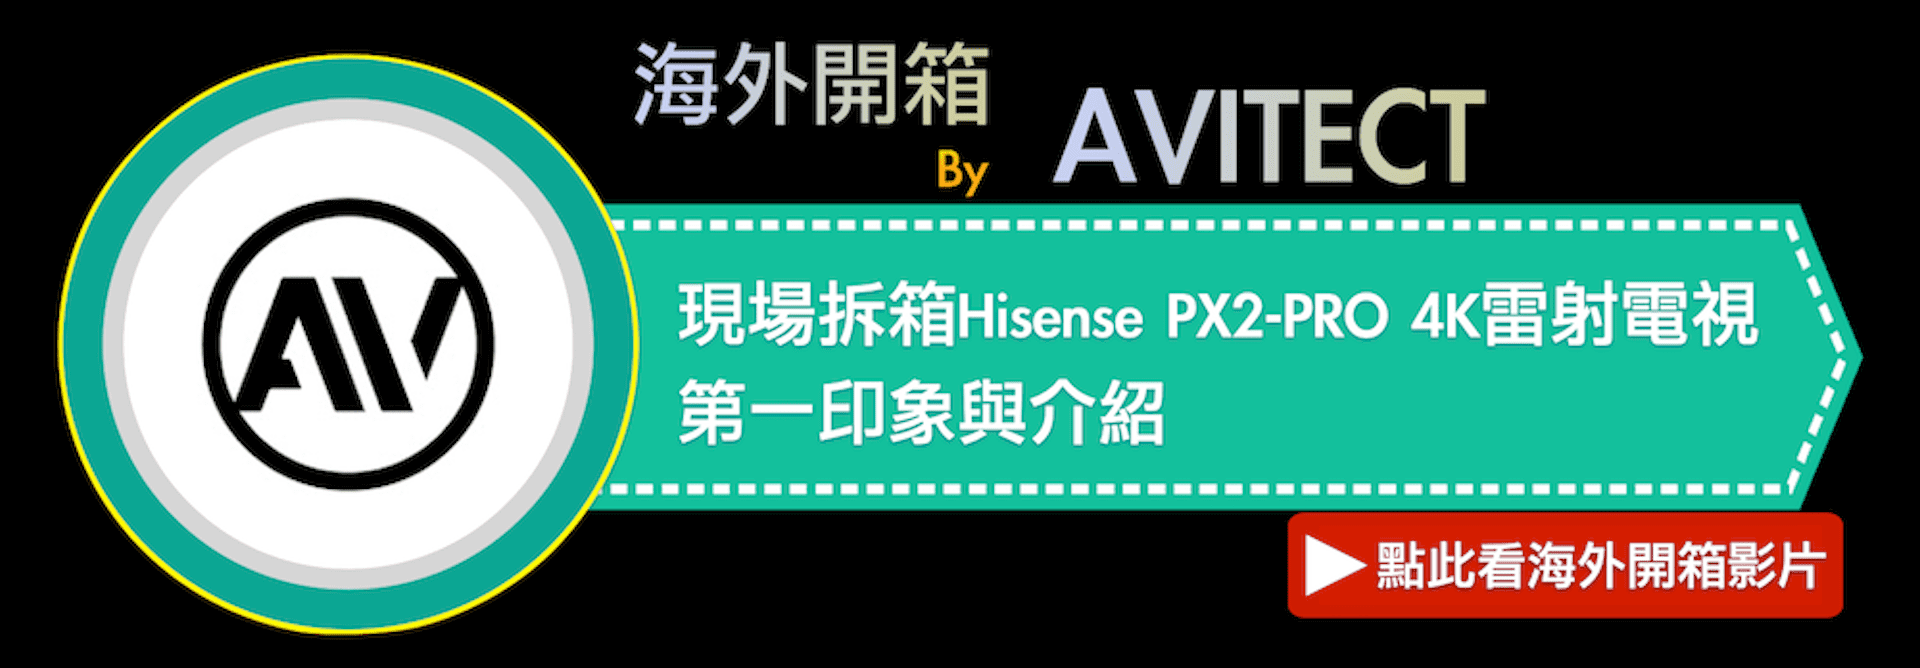 海外開箱ByAVITECT現場拆箱Hisense PX2-PRO 4K雷射電視第一印象與介紹點此看海外開箱影片